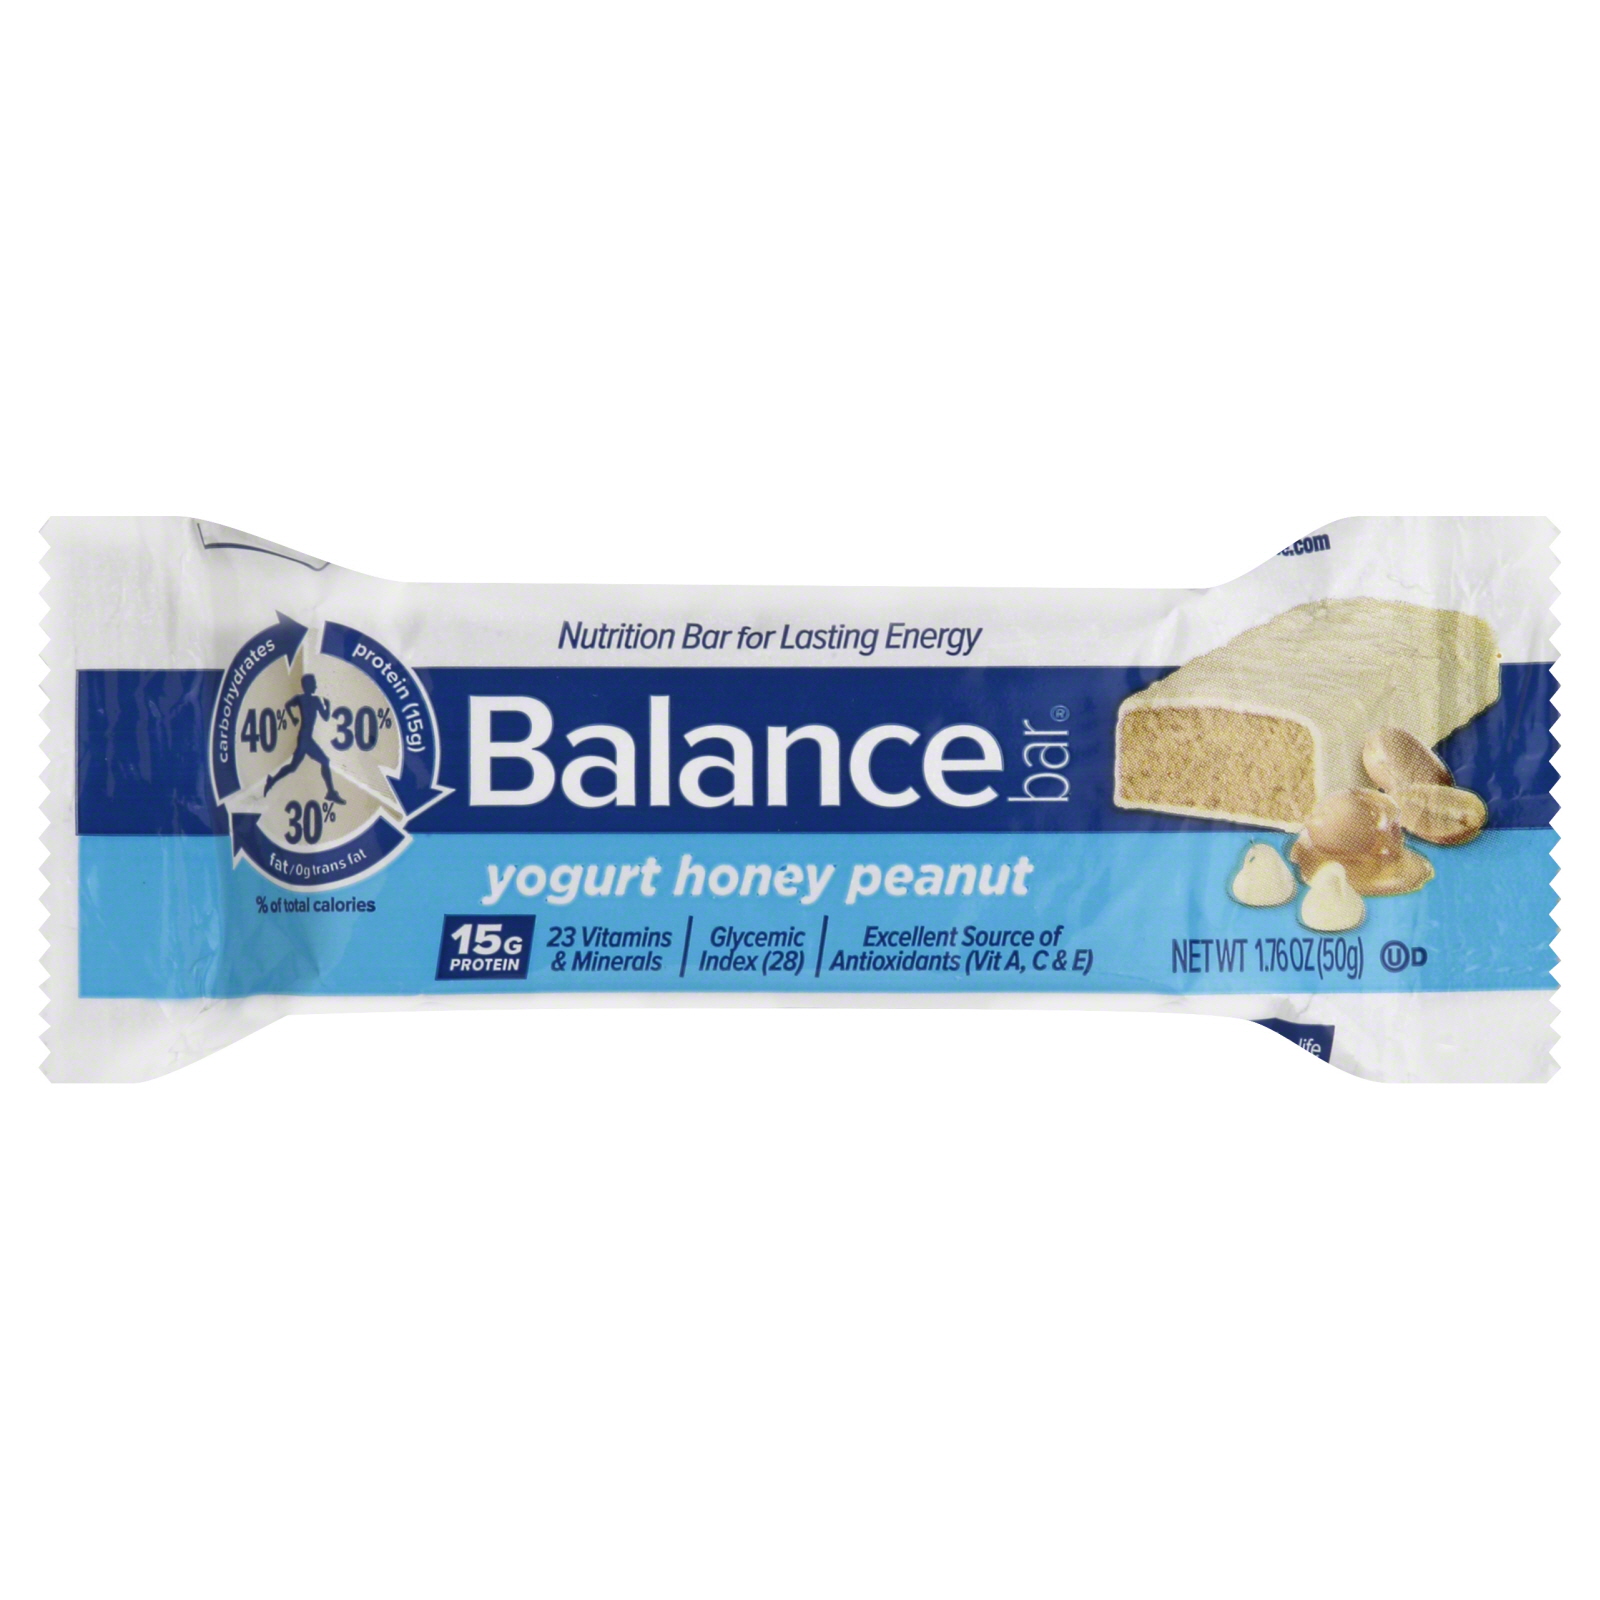 Balance Nutrition Bar, Yogurt Honey Peanut, 1.76 oz (50 g)